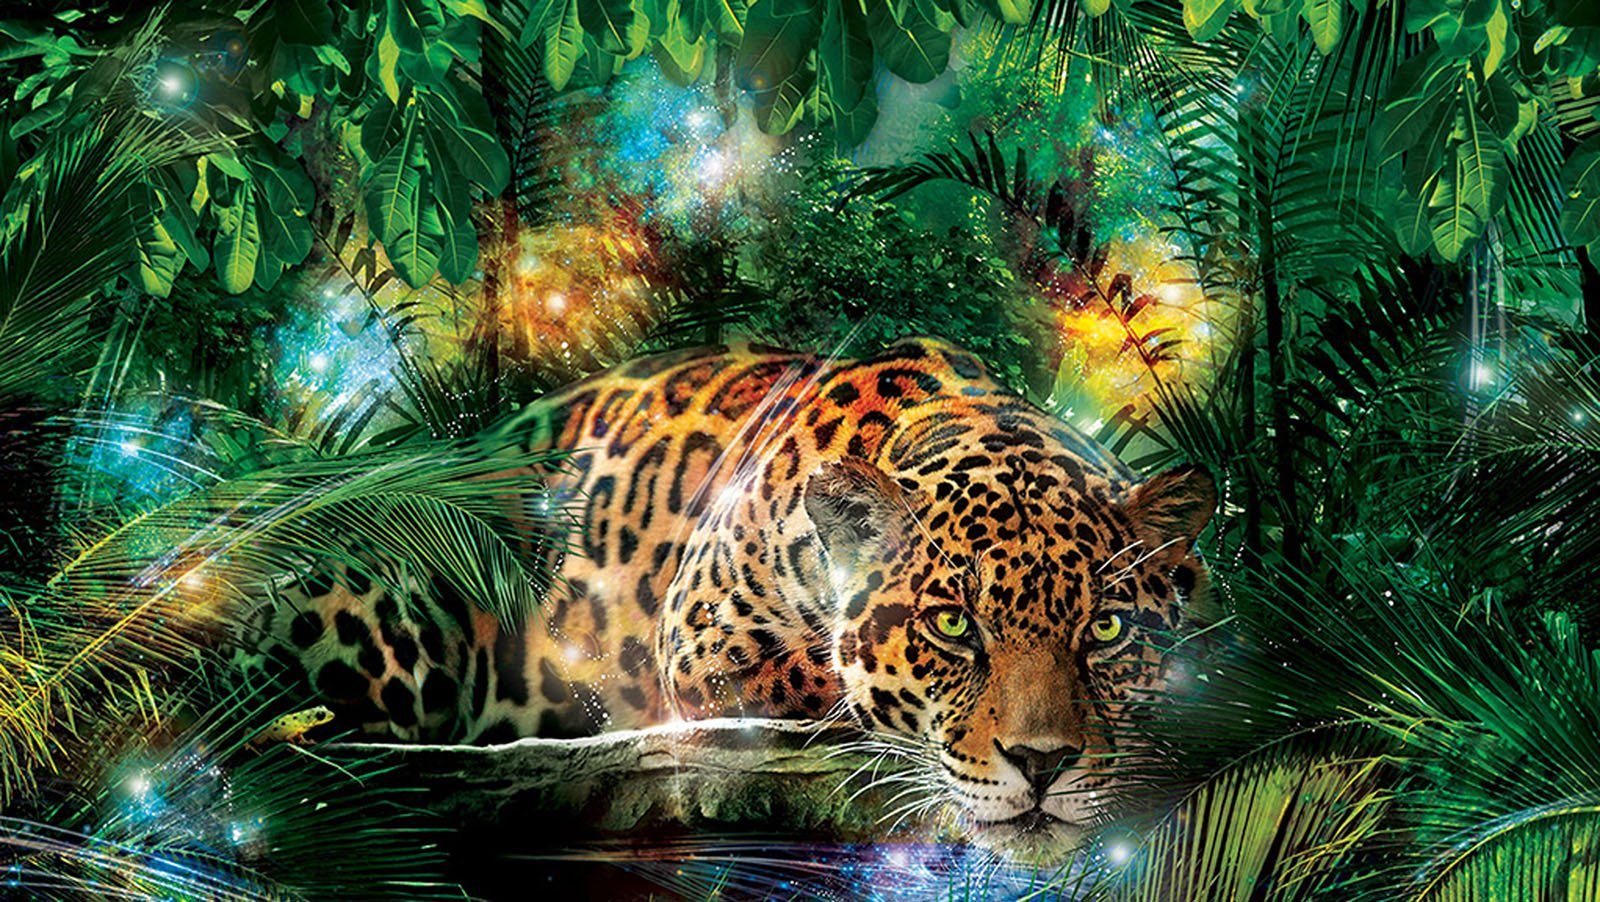 Wallarena Fototapete Leopard Jaguar Tiger Dschungel Tiere Vlies Tapete für Wohnzimmer oder Schlafzimmer Vliestapete Wandtapete Motivtapete, Glatt, Tiere, Vliestapete inklusive Kleister